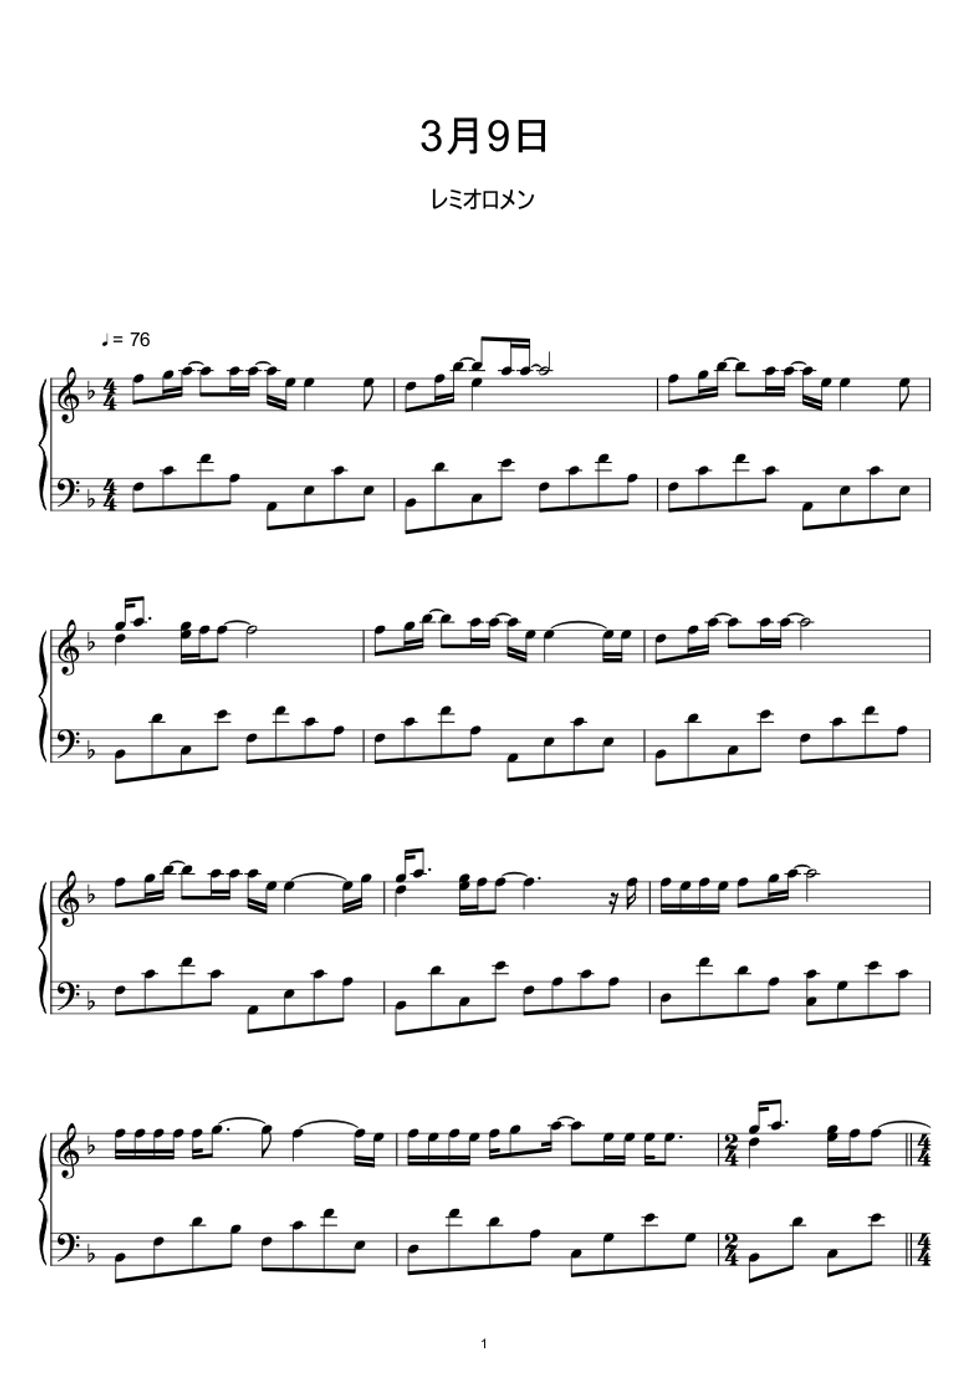 レミオロメン - 3月9日 (Sheet Music, MIDI,) by sayu